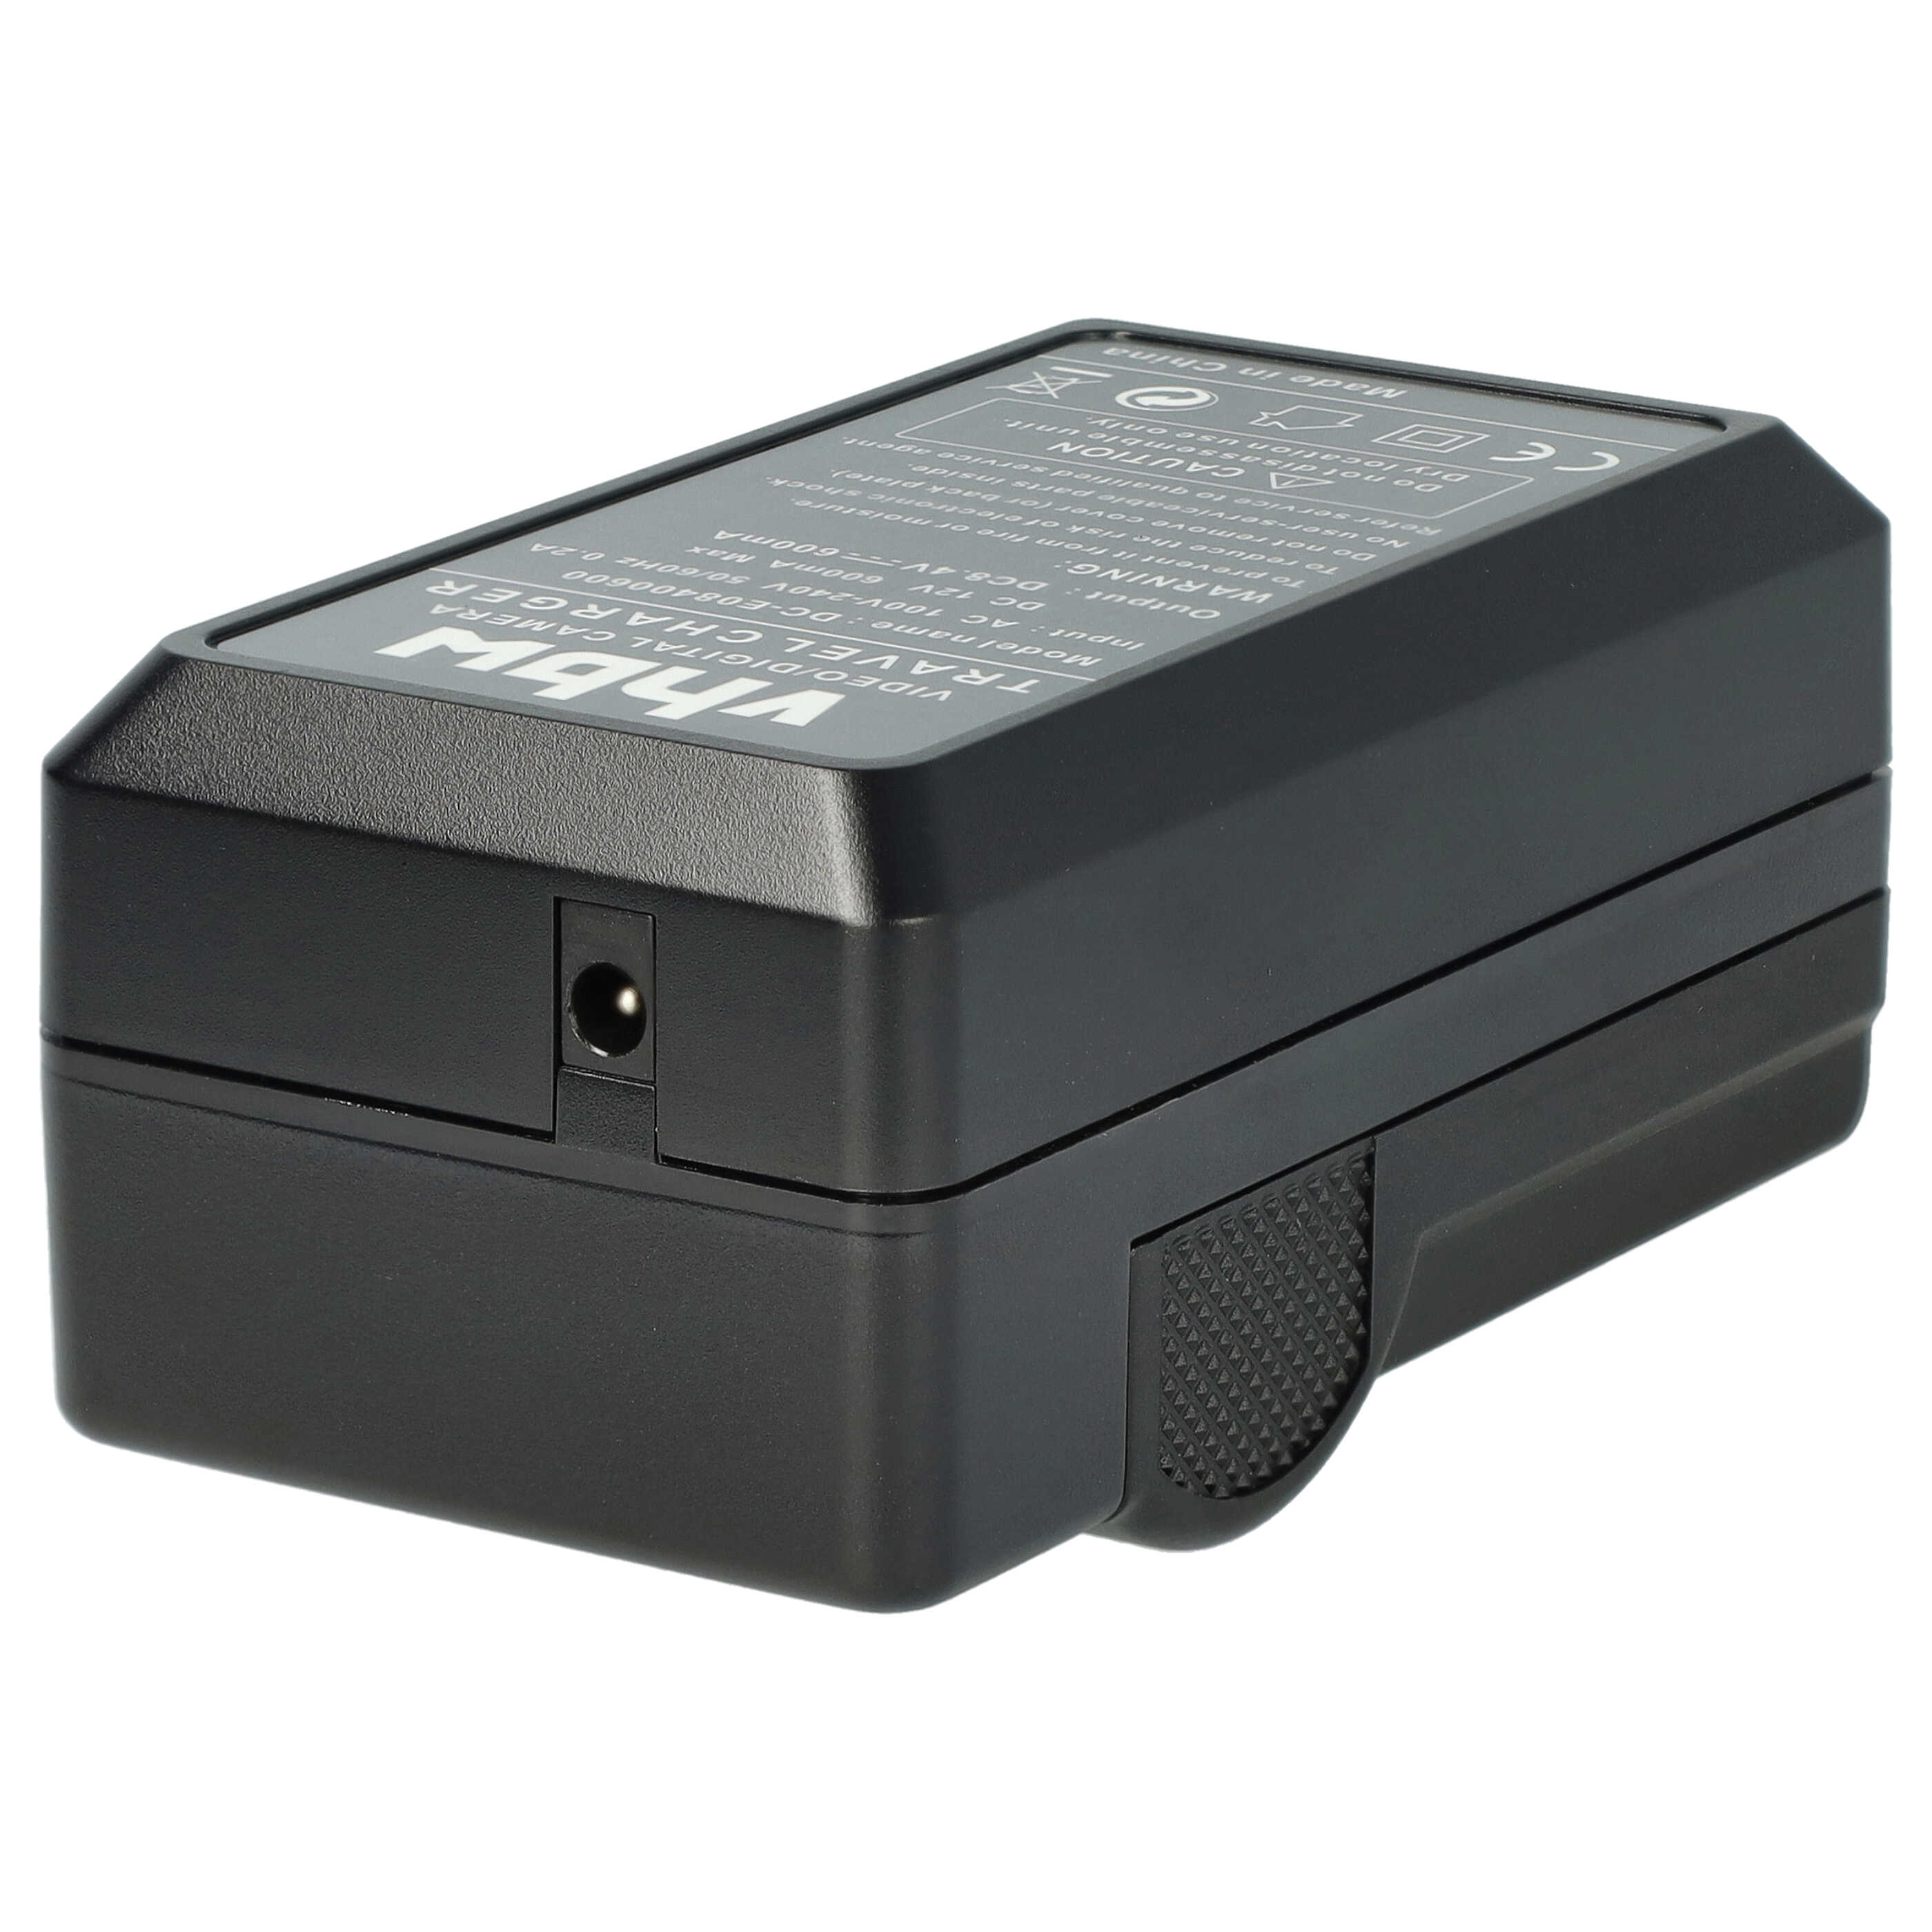 Akku Ladegerät passend für K-70 Kamera u.a. - 0,6 A, 8,4 V